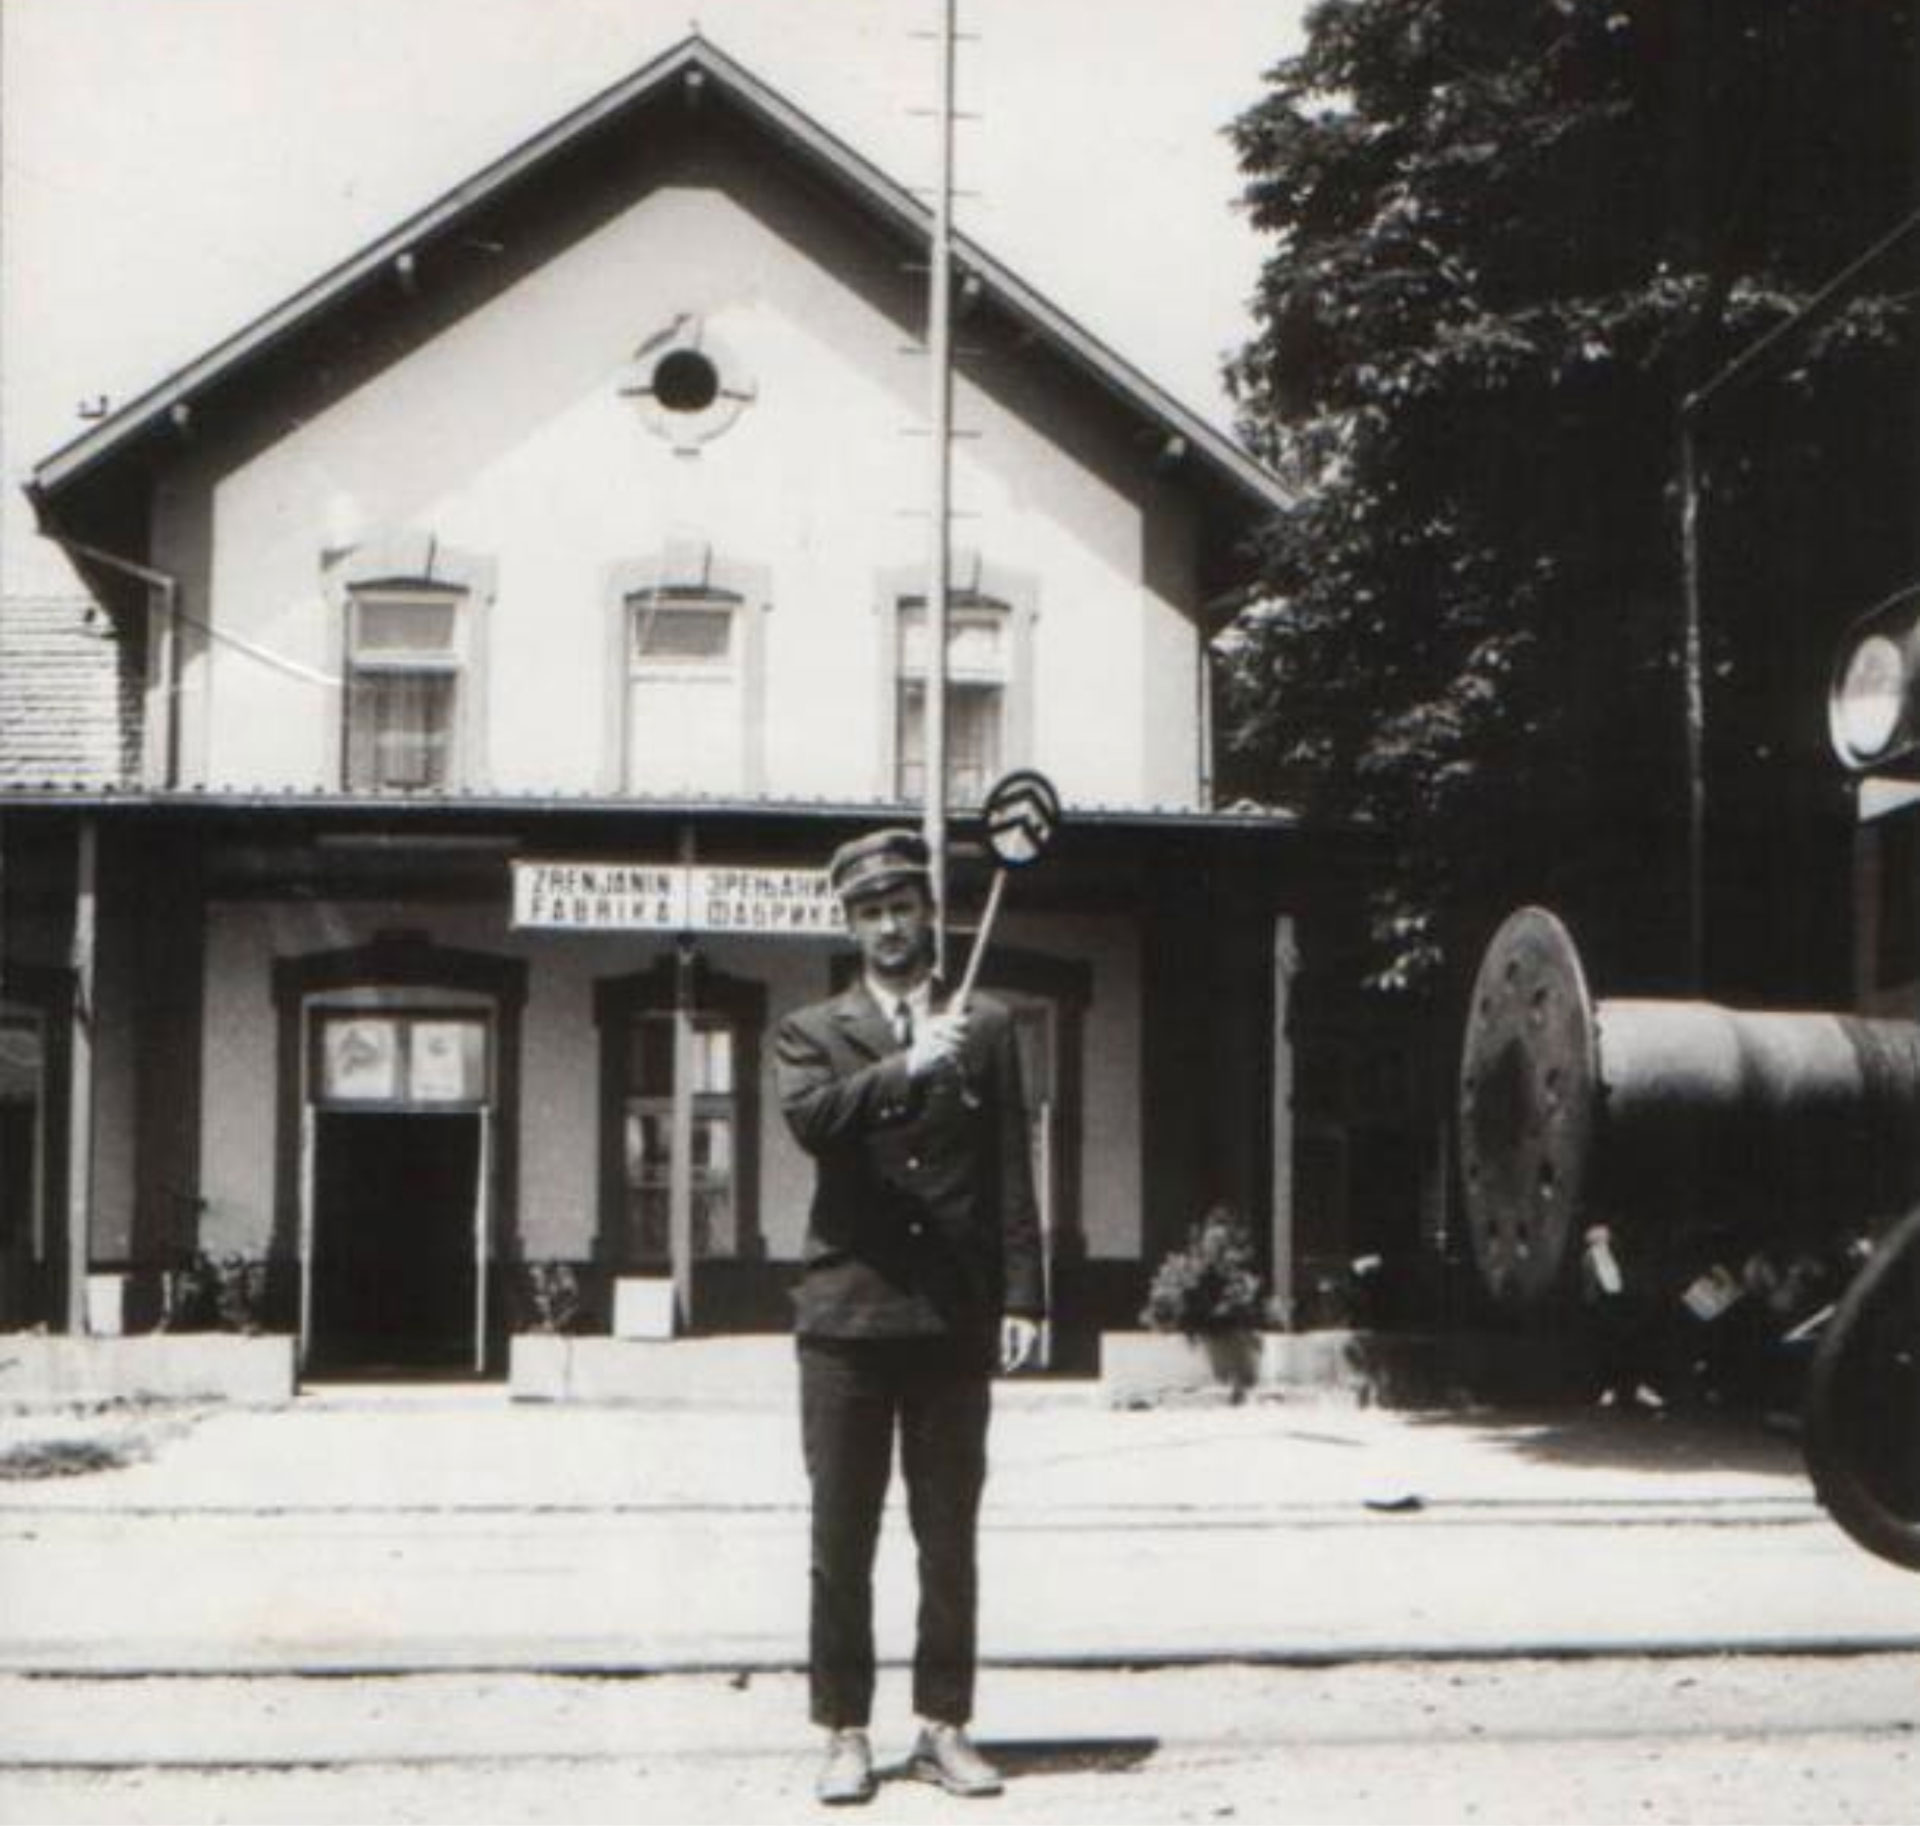 Stanica Zrenjanin - Fabrika 1980-ih godina. Iz zbirke železničke stanice Zrenjanin.